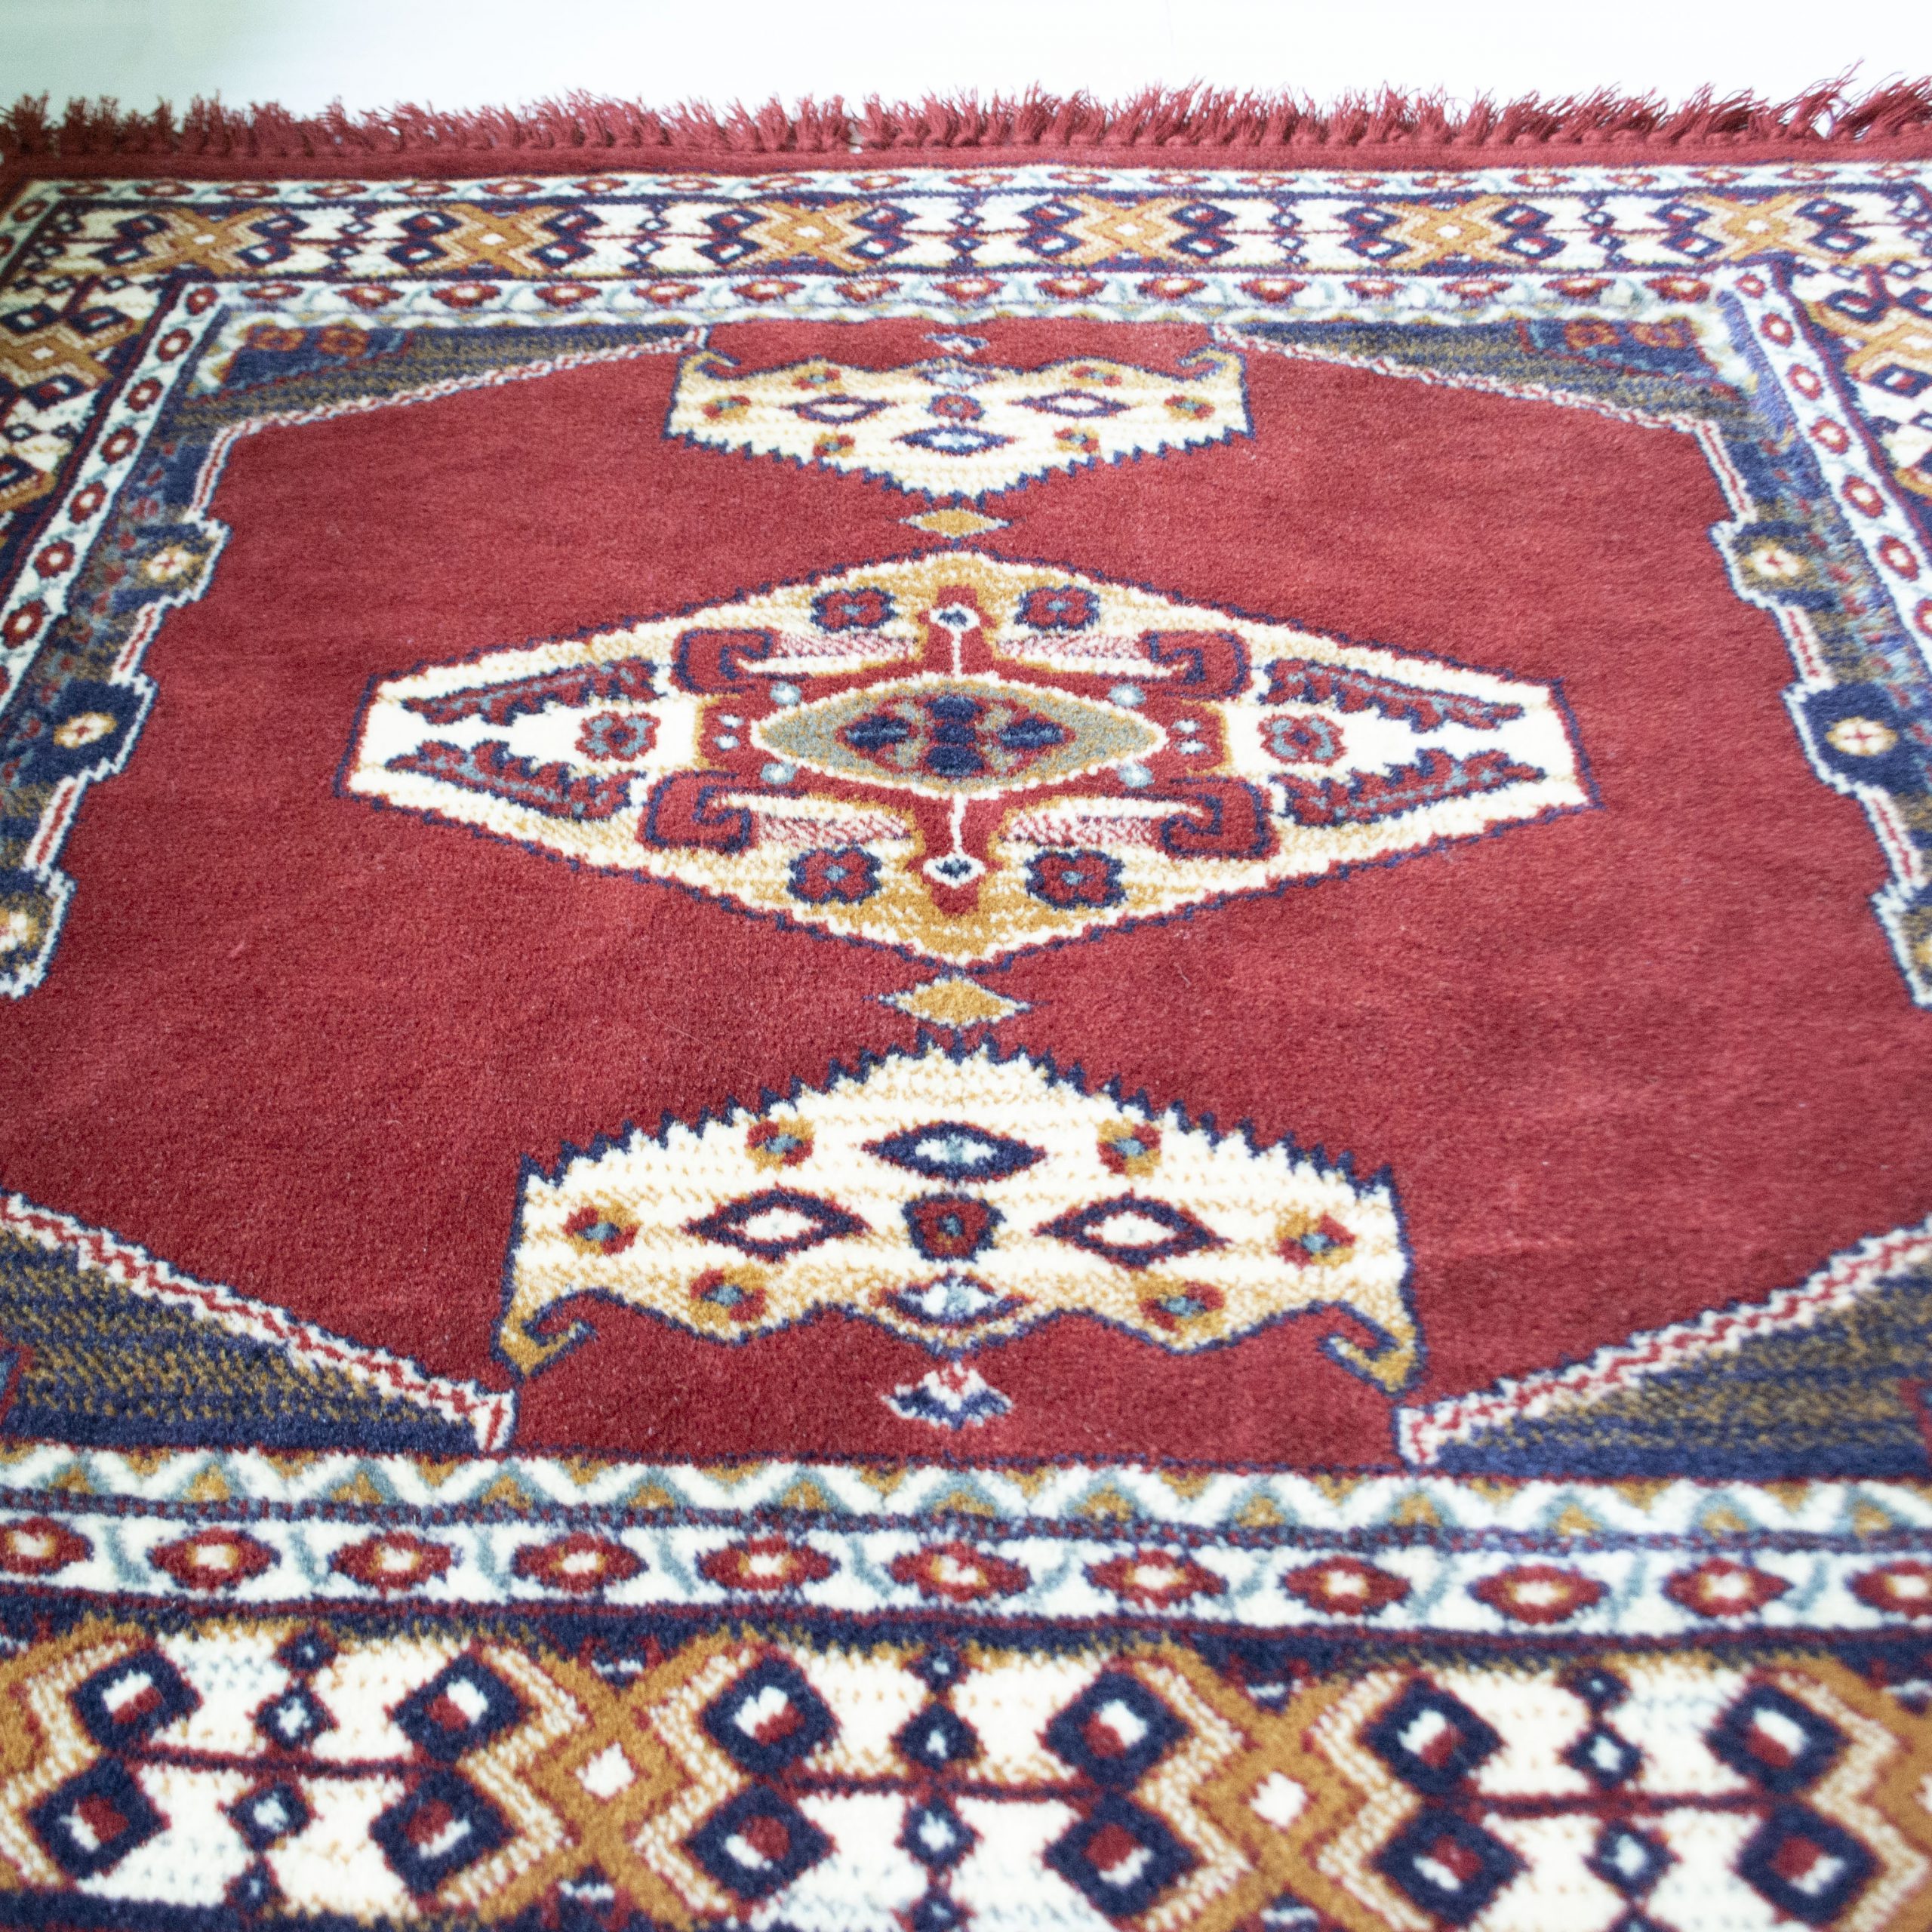 Afhankelijk eeuwig inval Vintage tapijt/vloerkleed rood - End of April - Vintage tapijt/vloerkleed  rood